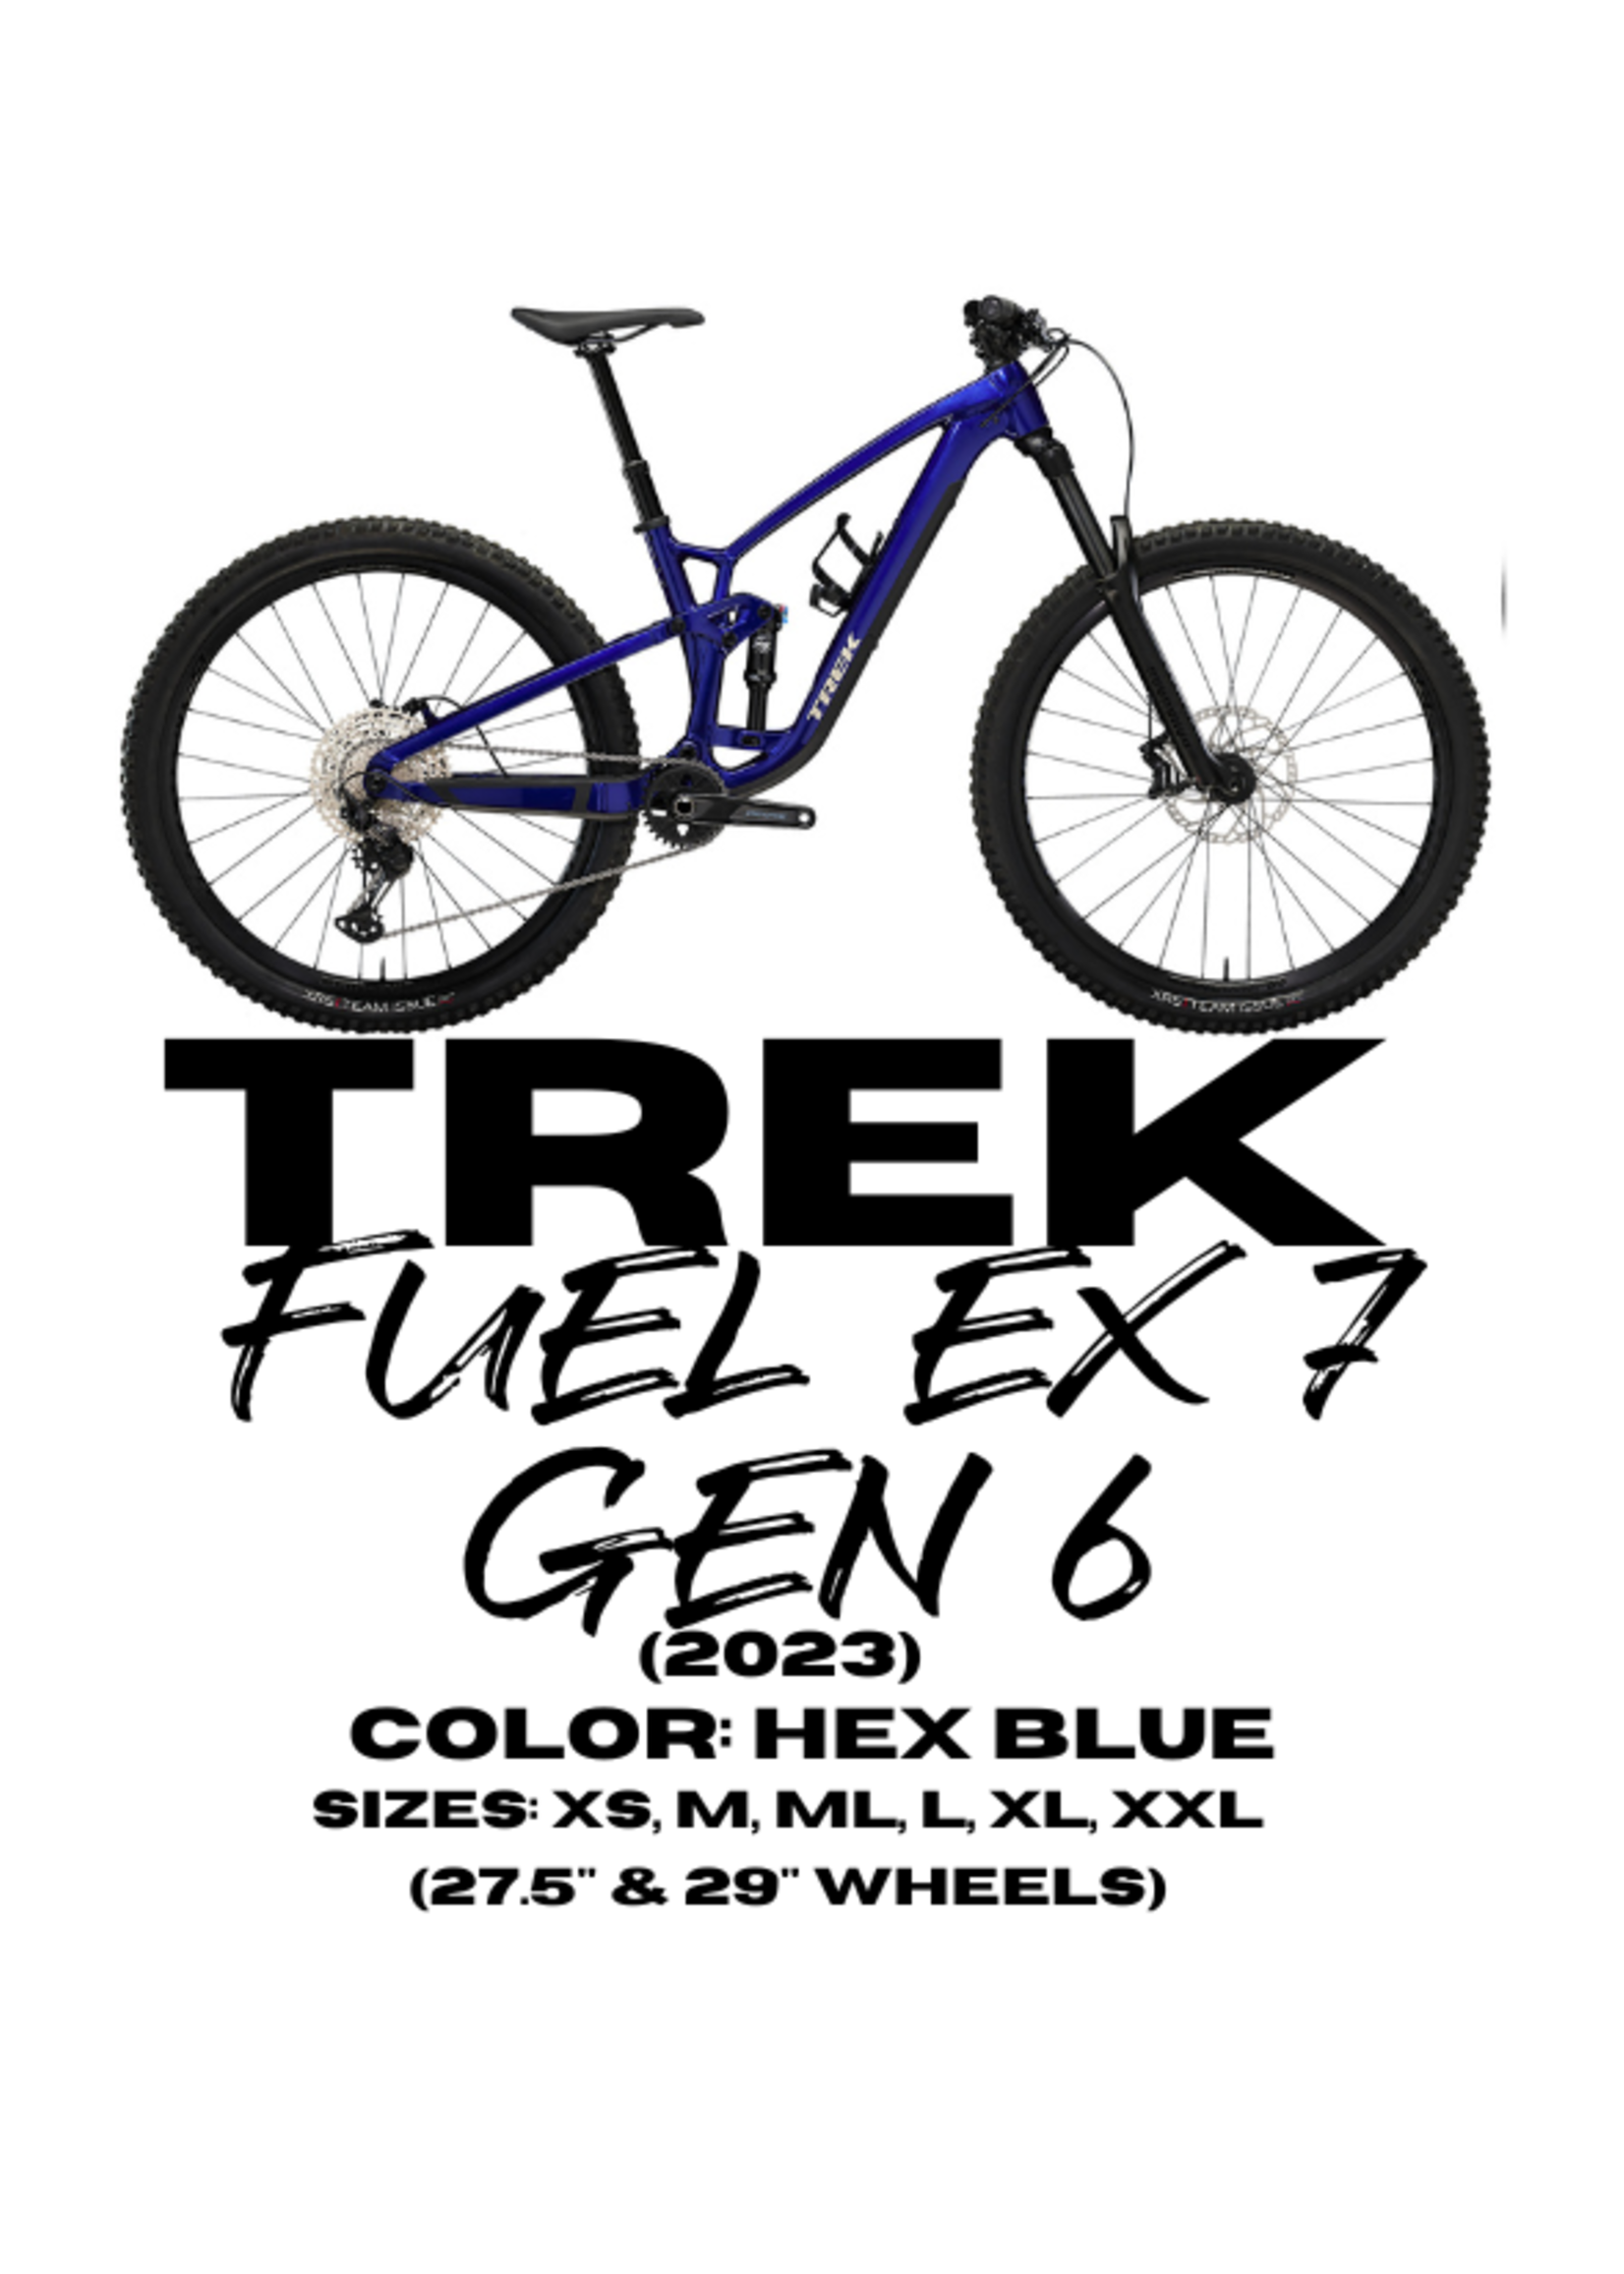 TREK Trek Fuel EX 7 Gen 6 (2023)